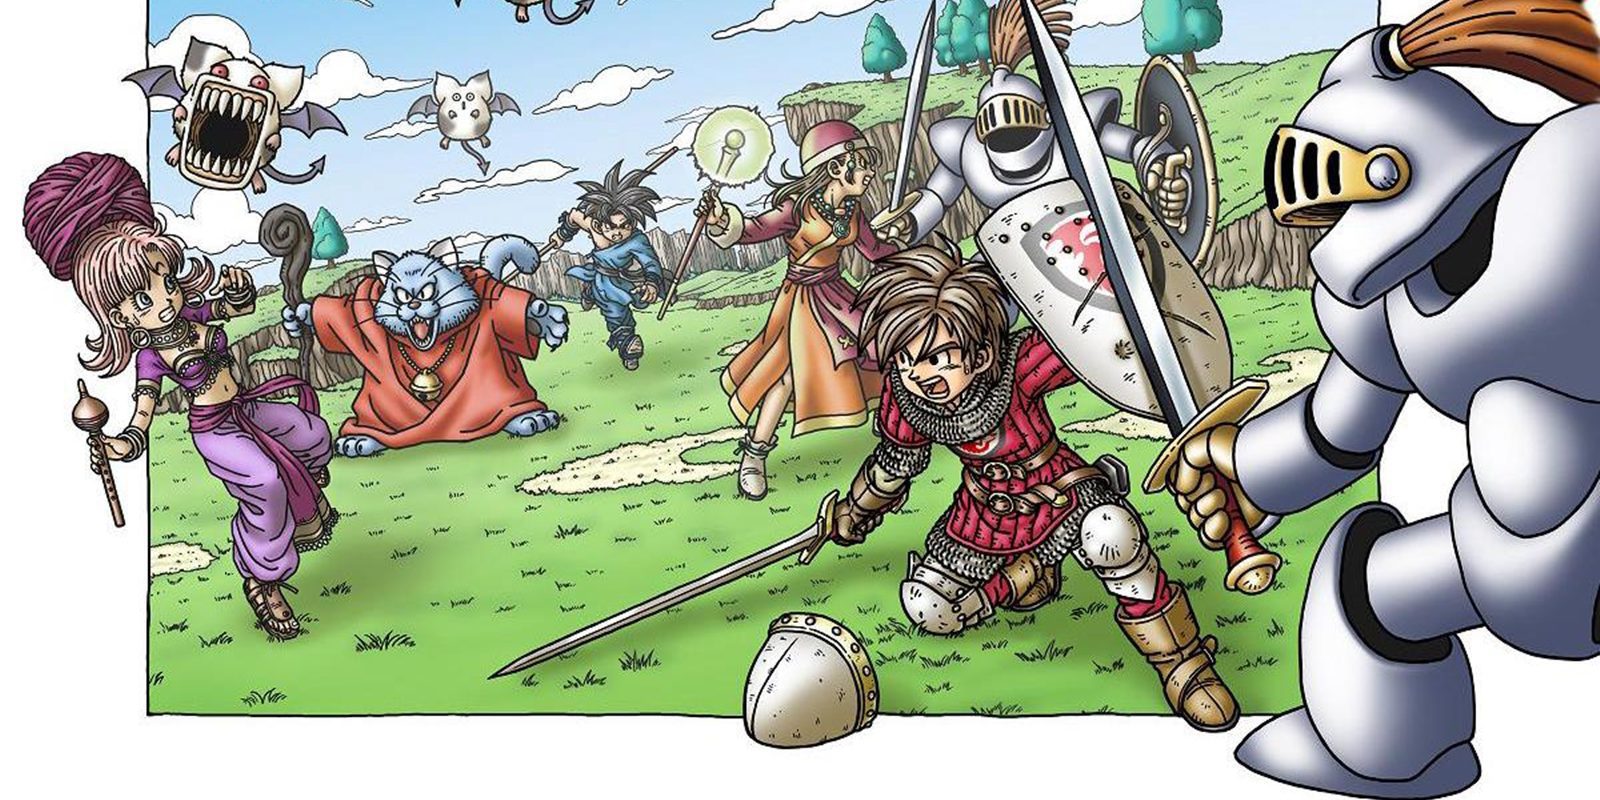 Desvelado el responsable de que 'Dragon Quest IX' fuese exclusivo de Nintendo DS